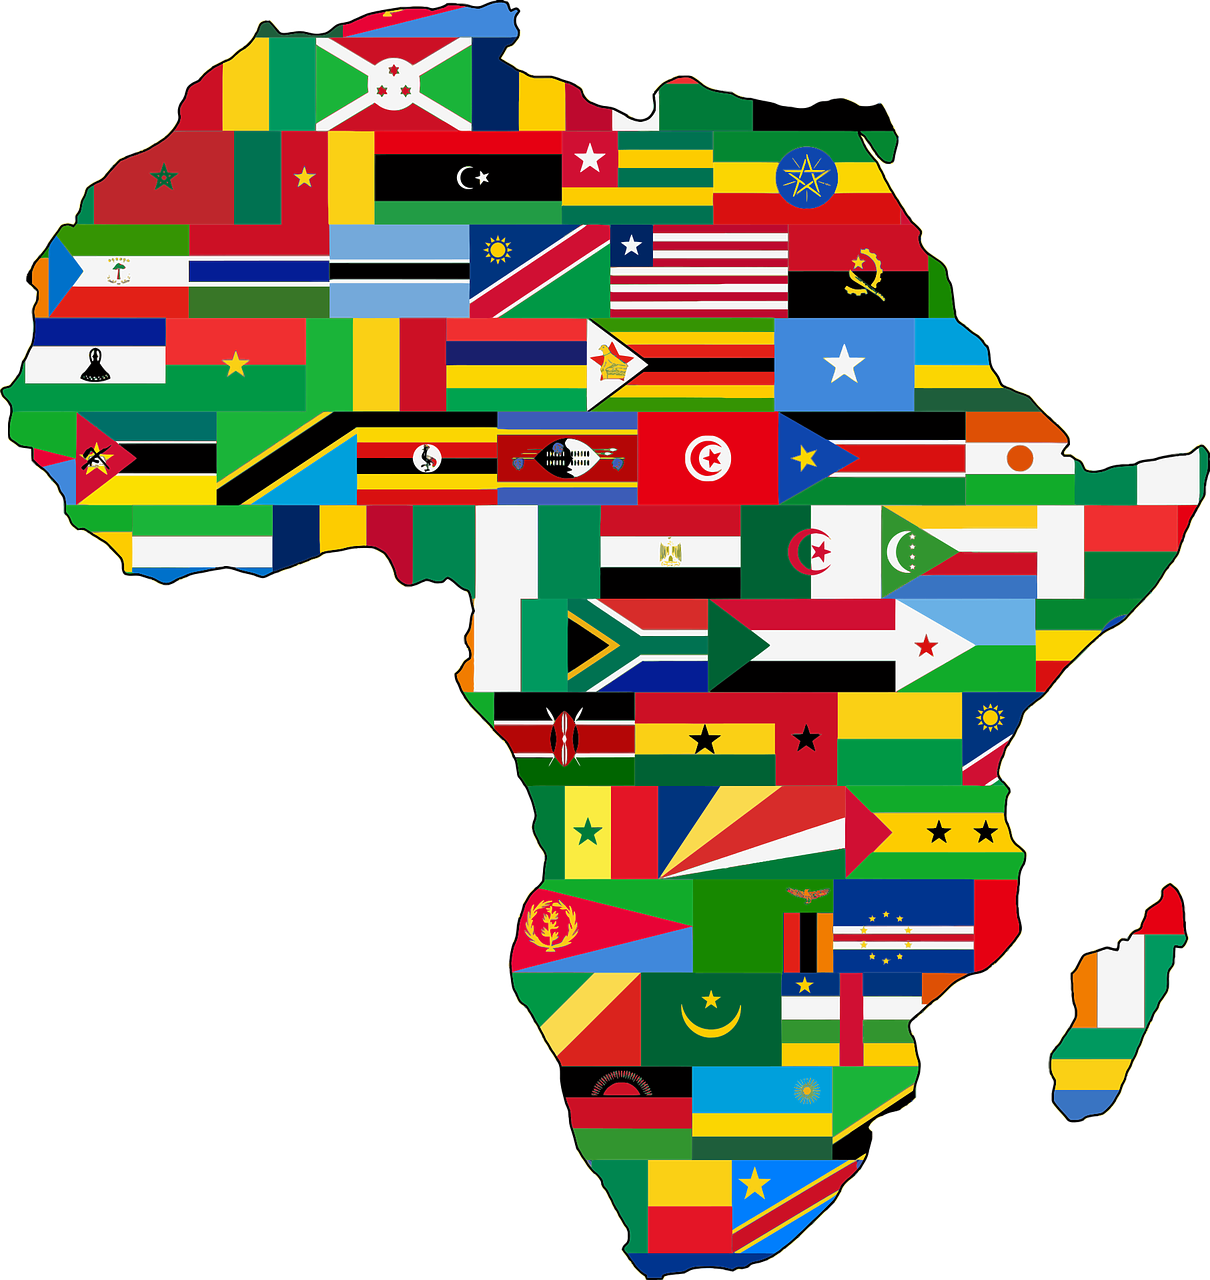 Las crisis más olvidadas por la comunidad internacional son africanas